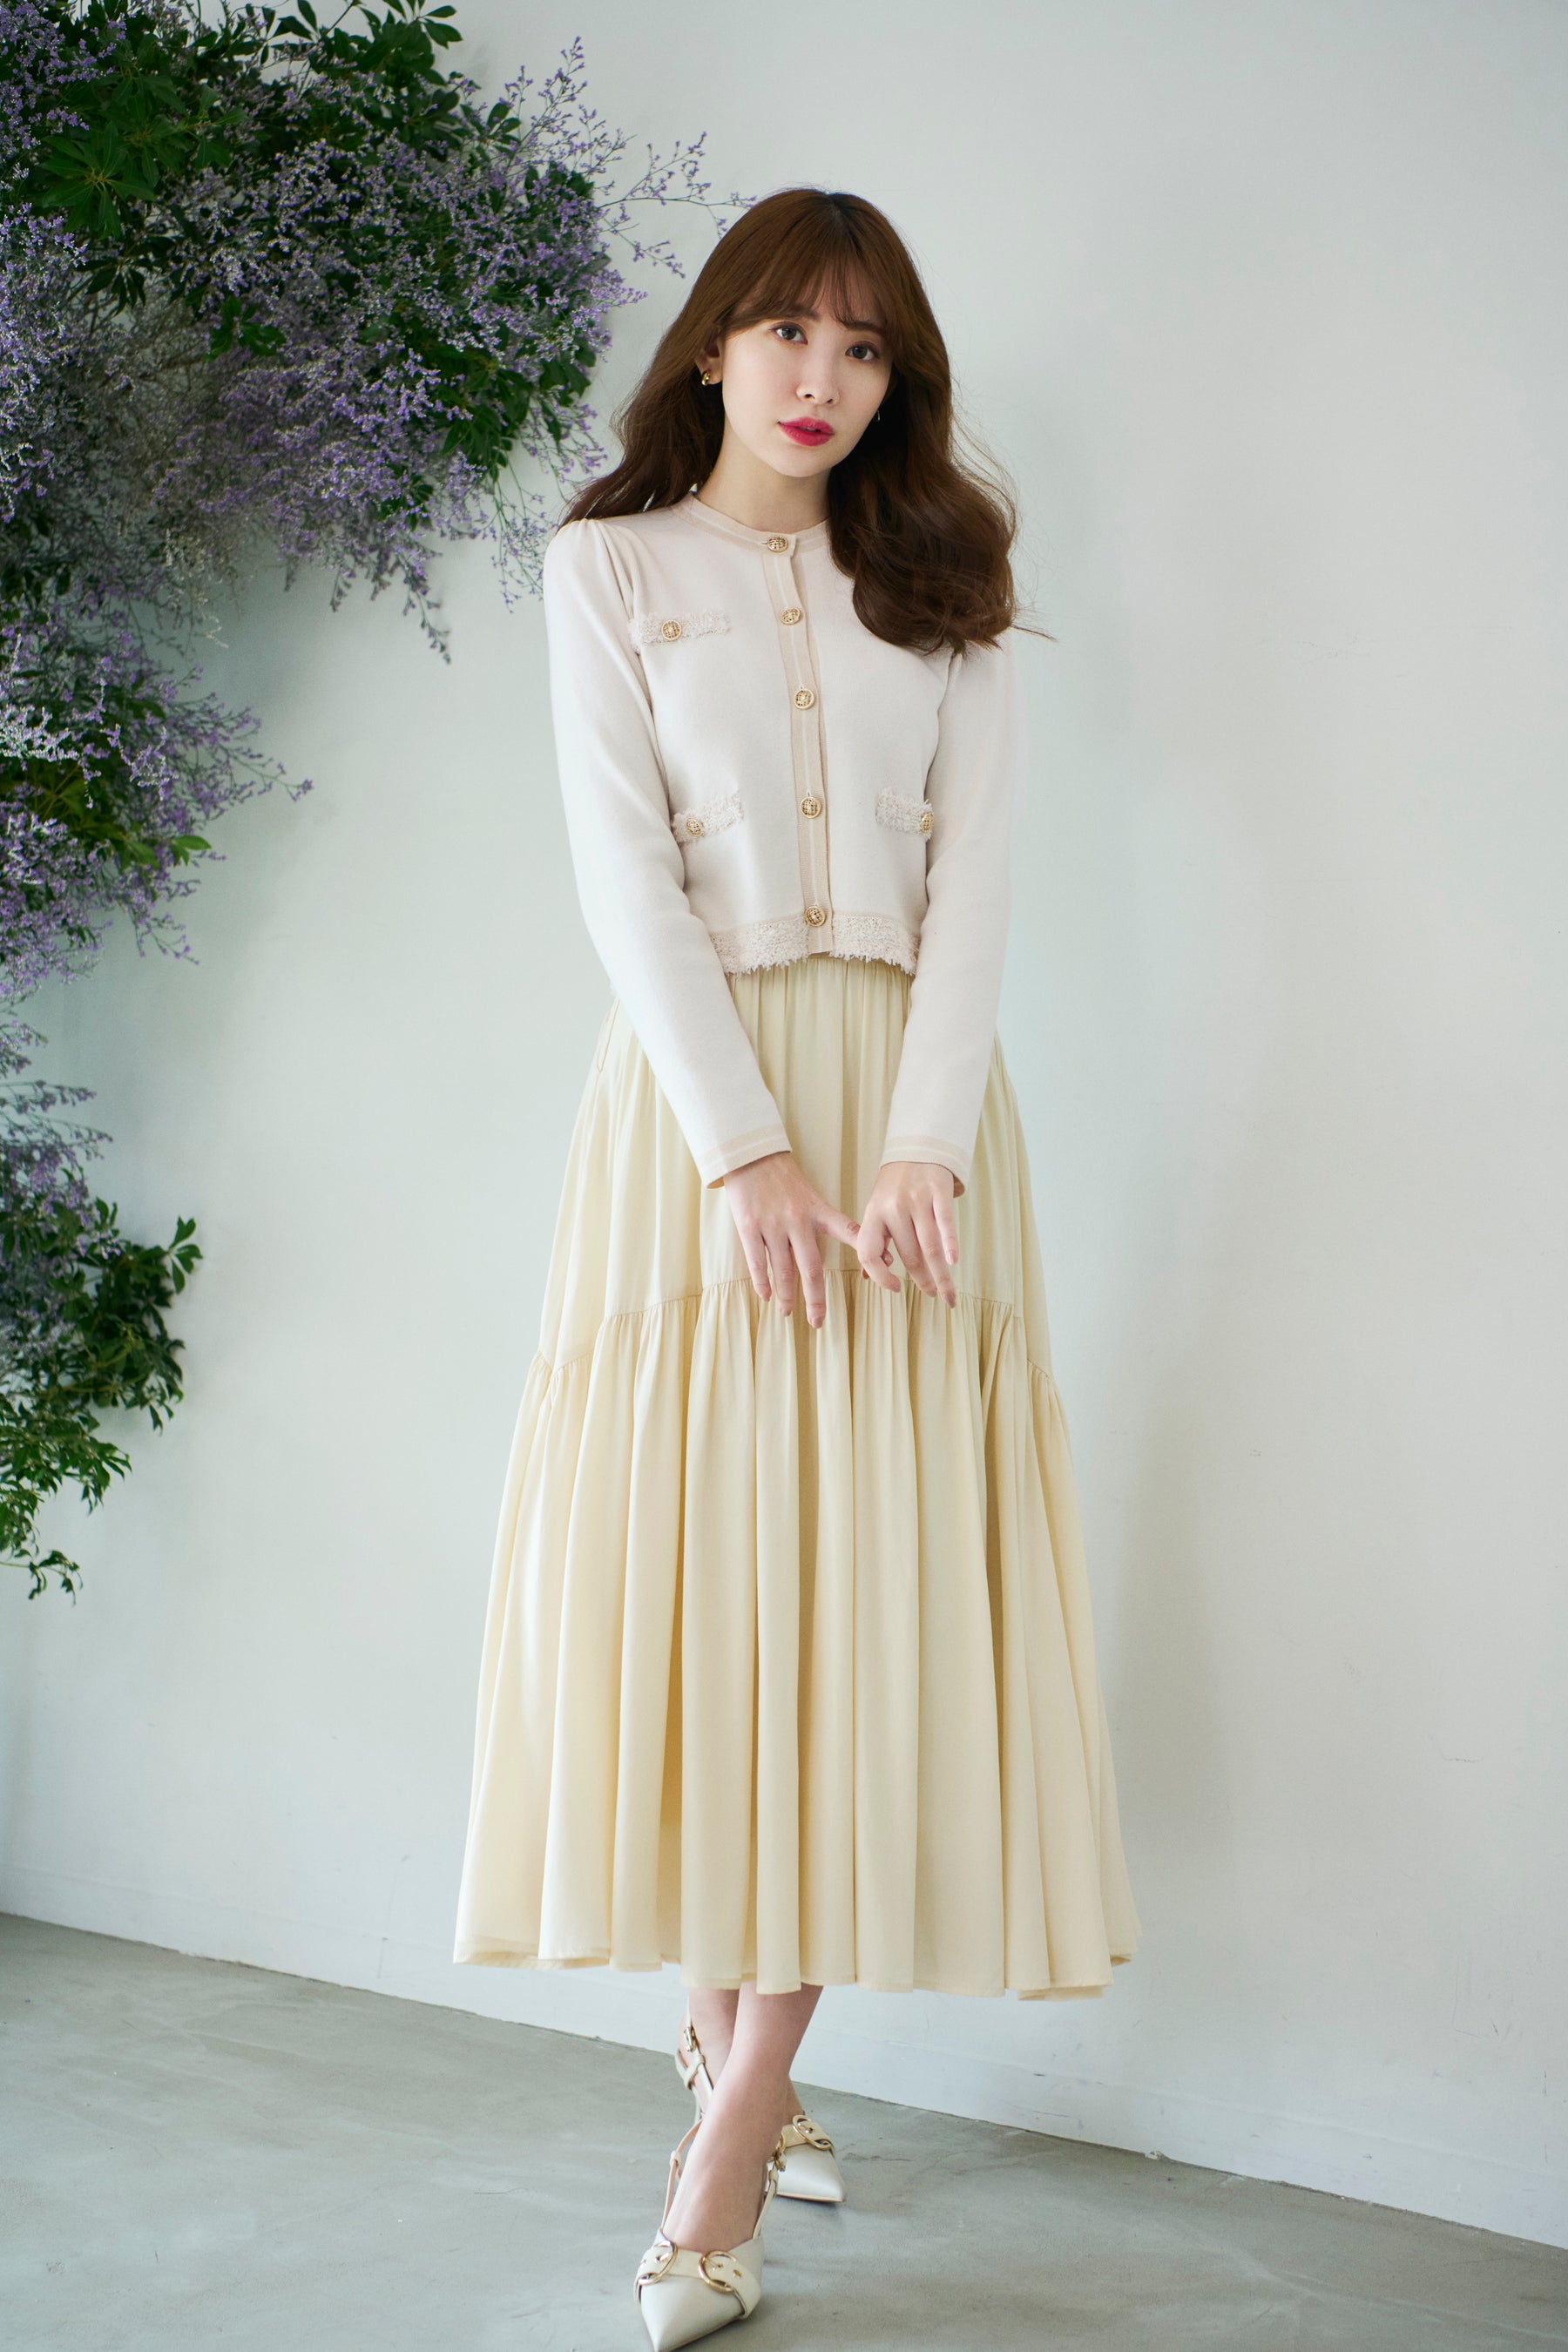 7,990円Herlipto High-Waist Tiered Long Skirt